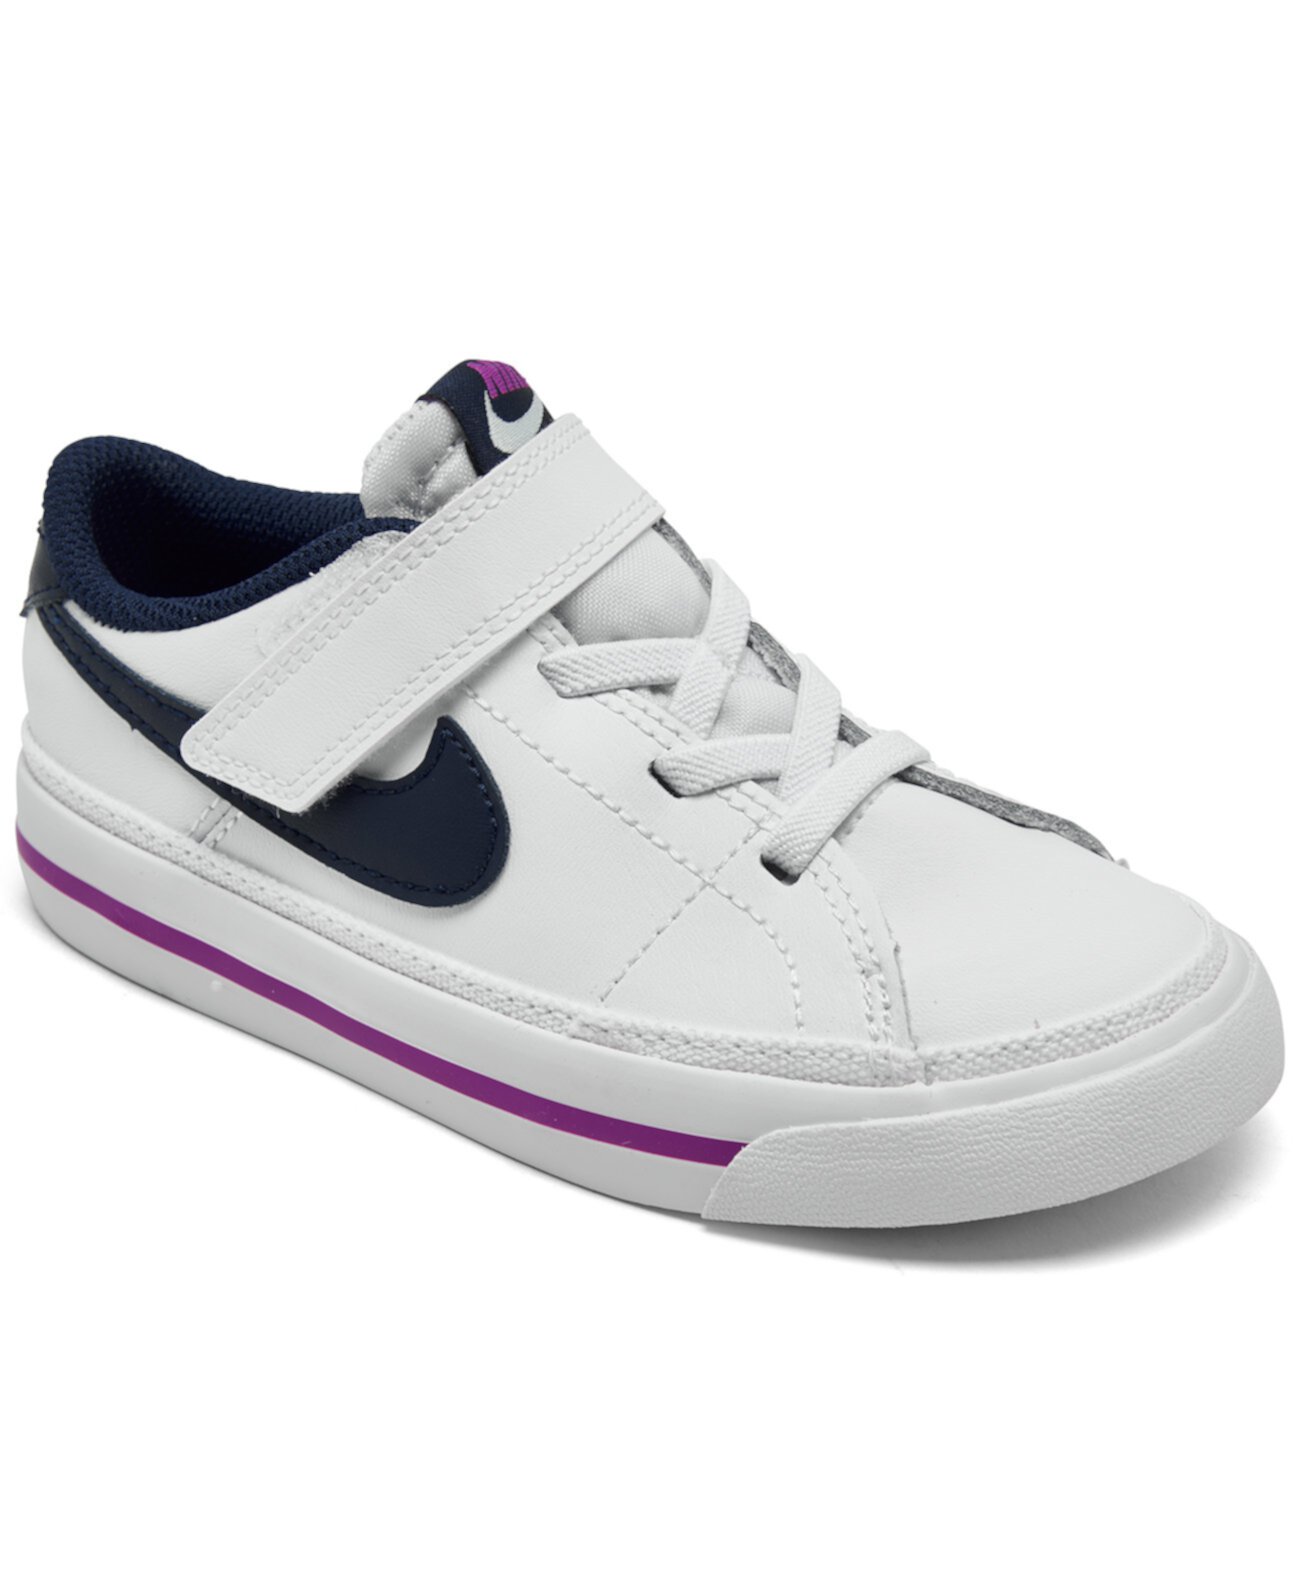 Повседневные кроссовки с закрытой застежкой для малышей для девочек Court Legacy от Finish Line Nike